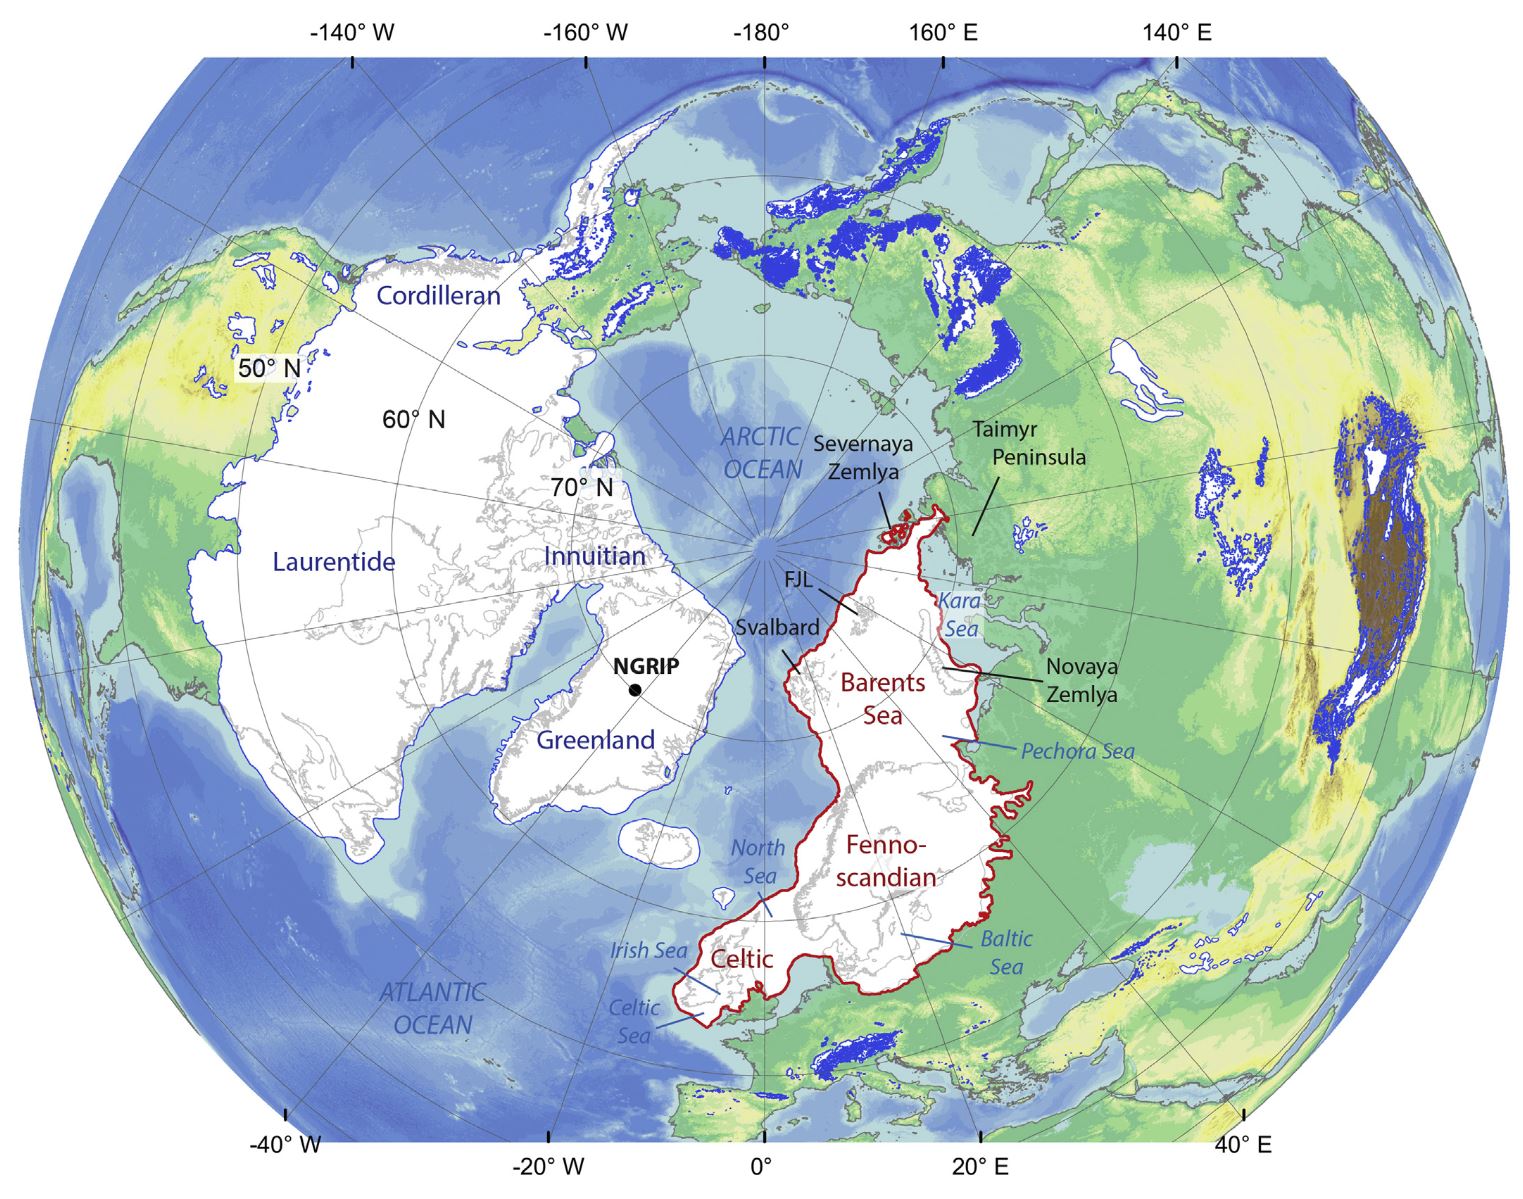 Carte de la dernière période glaciaire, patton et al., 2016